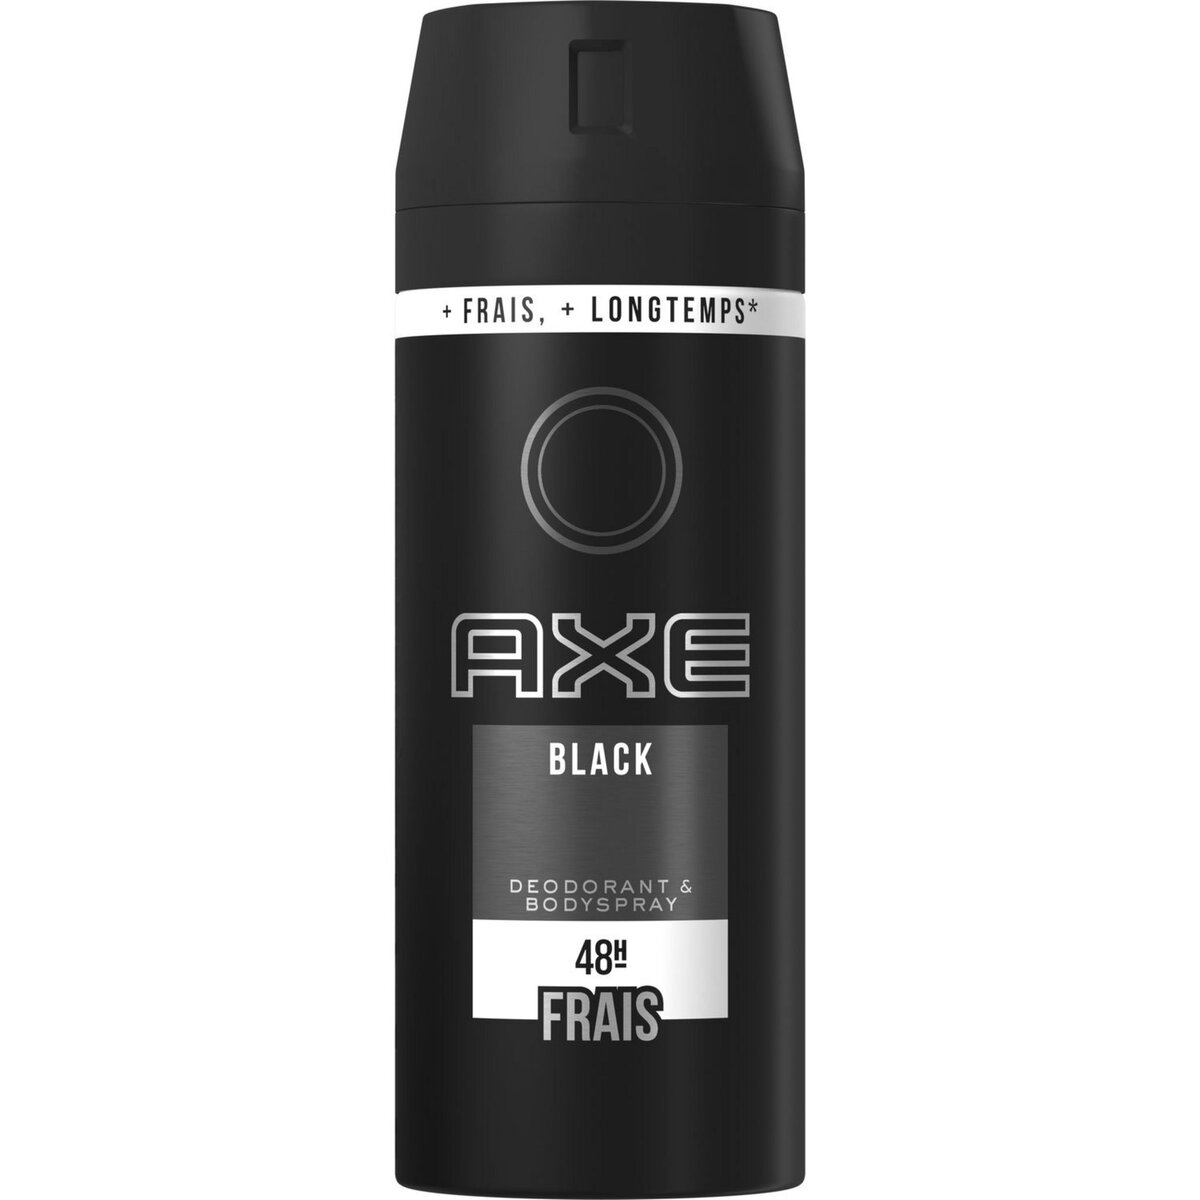 AXE Black Déodorant homme spray antibactérien 48H frais 150ml